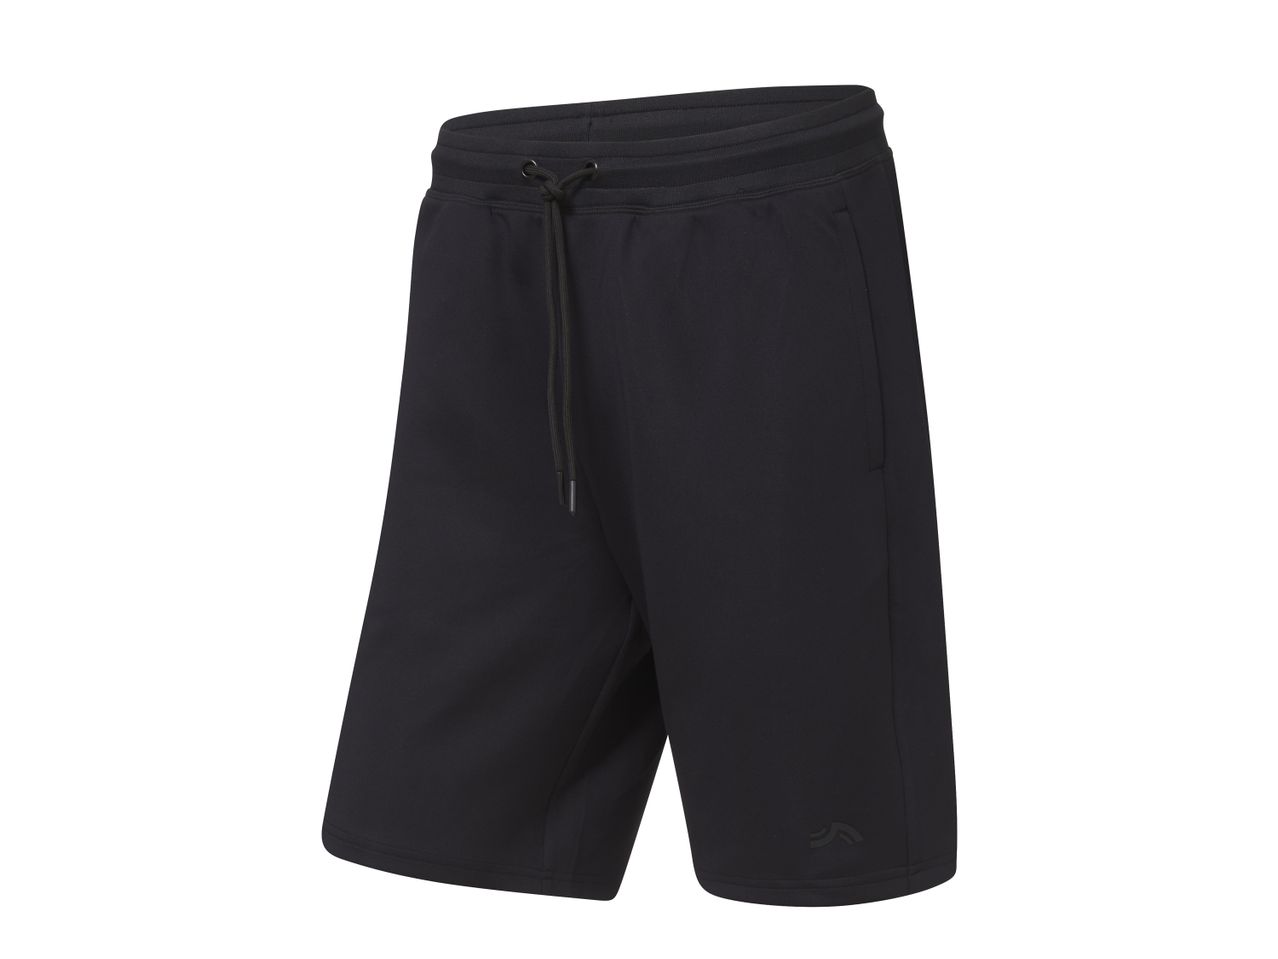 Shorts sportivi da uomo , prezzo 7,99 EUR 
Shorts sportivi da uomo Misure: S-XL ...